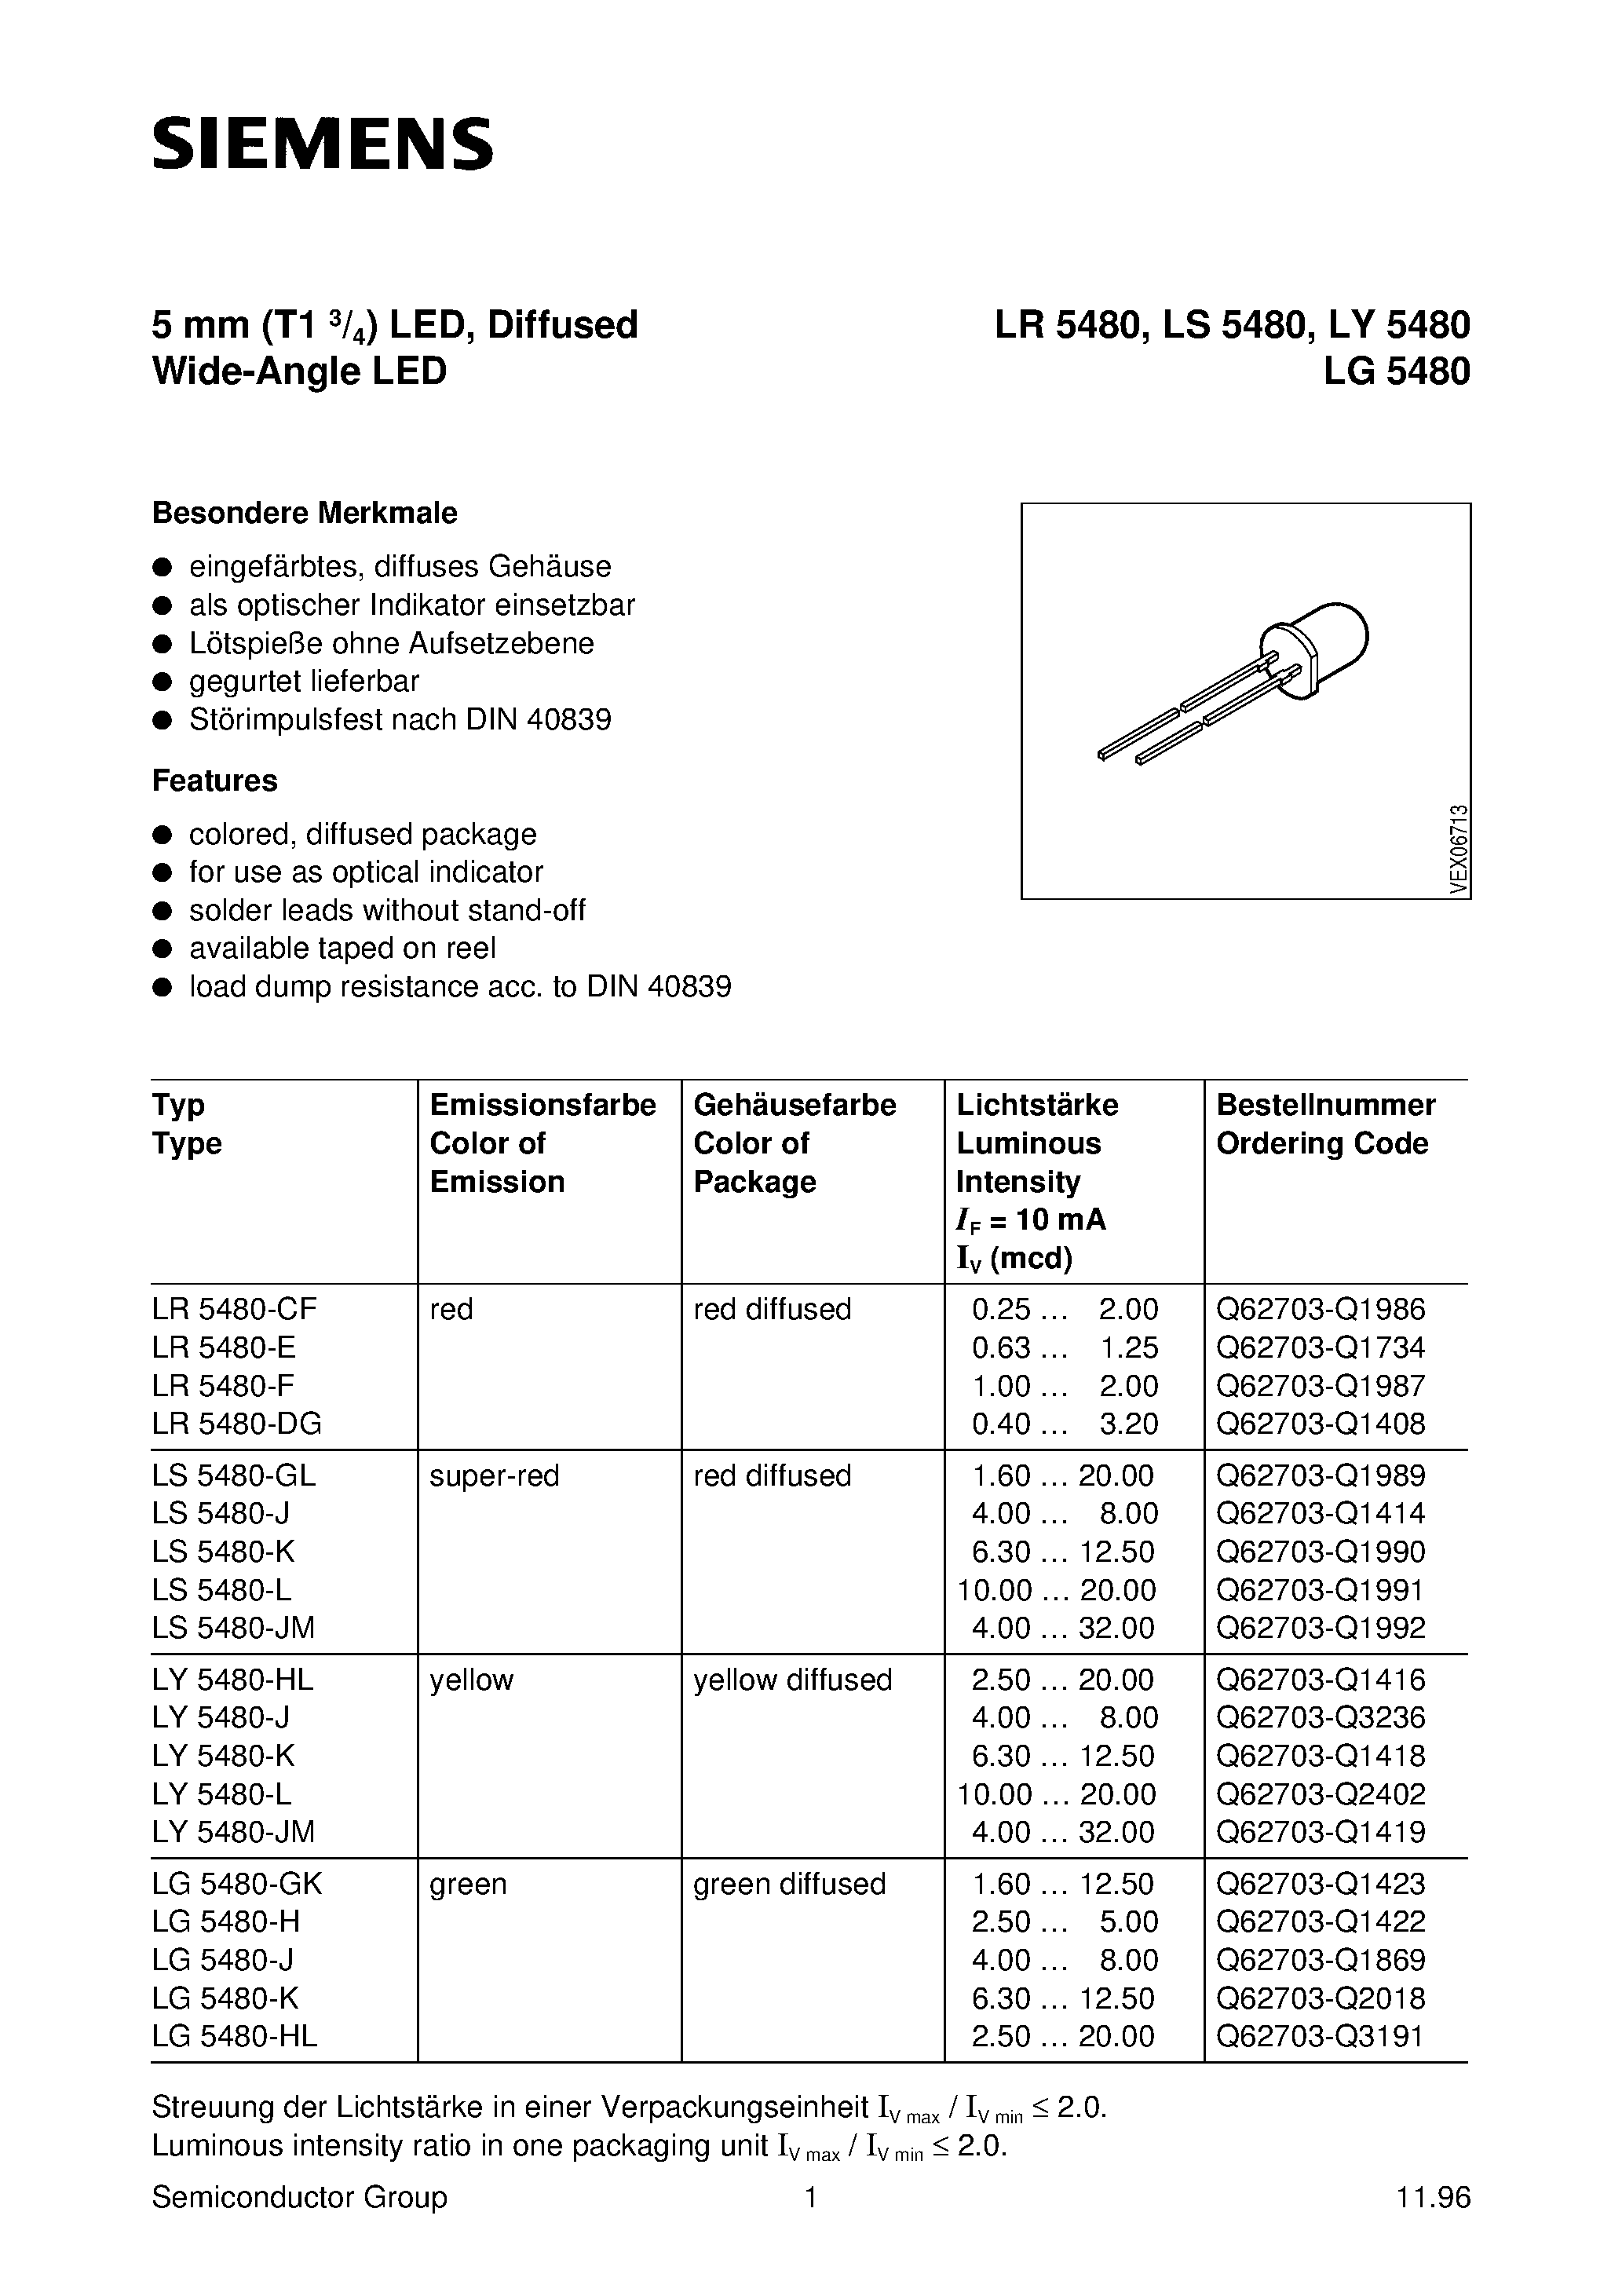 Даташит LY5480-K - T1 (5mm) LED LAMP страница 1